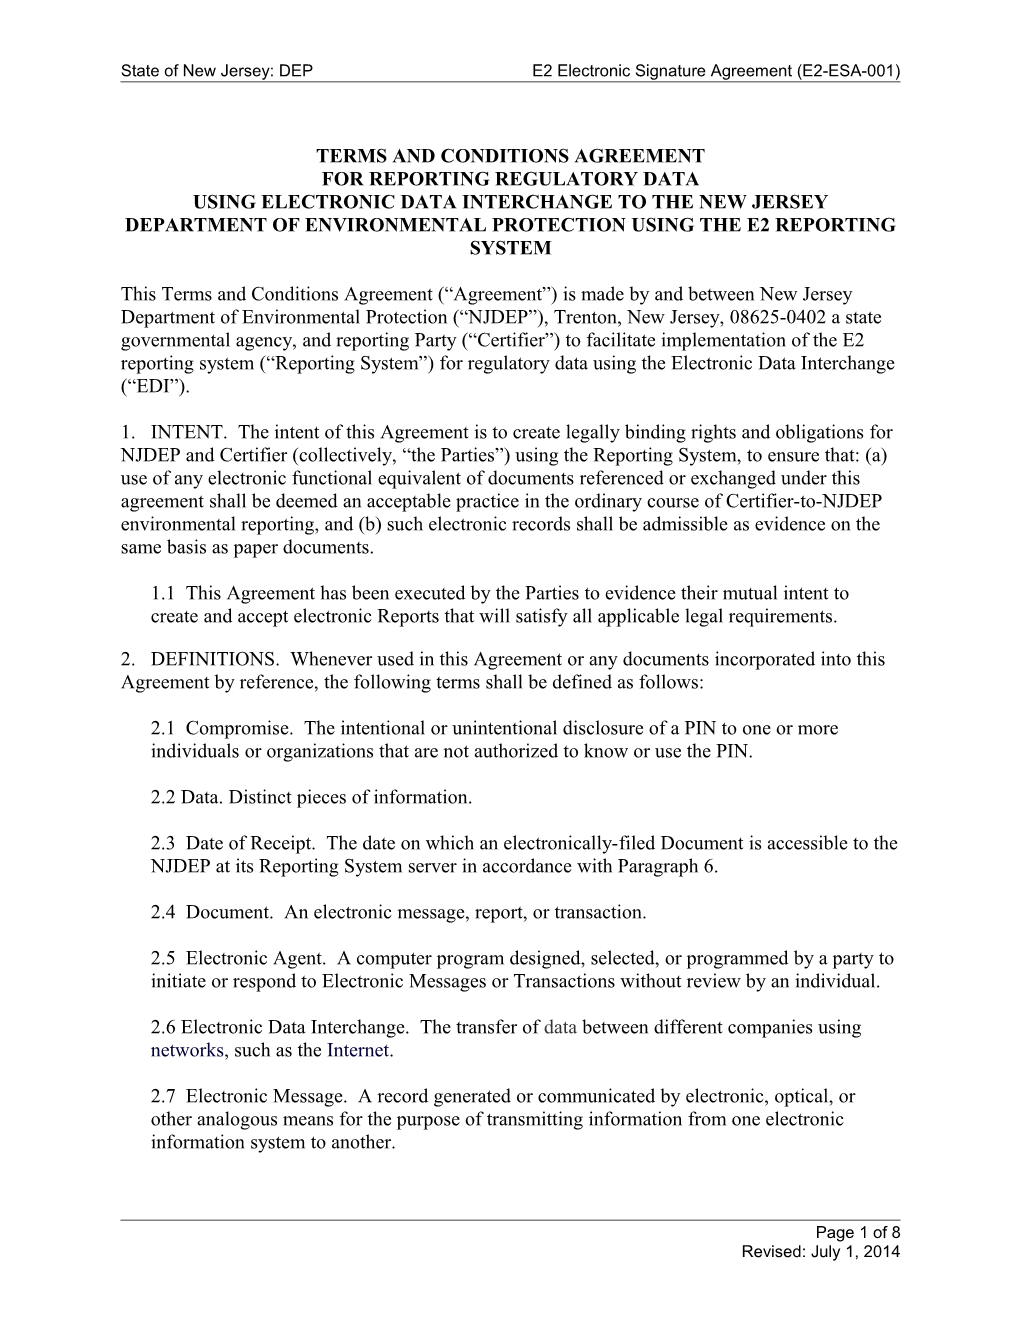 E2-ESA-001: NJDEP E2 Electronic Signature Agreement